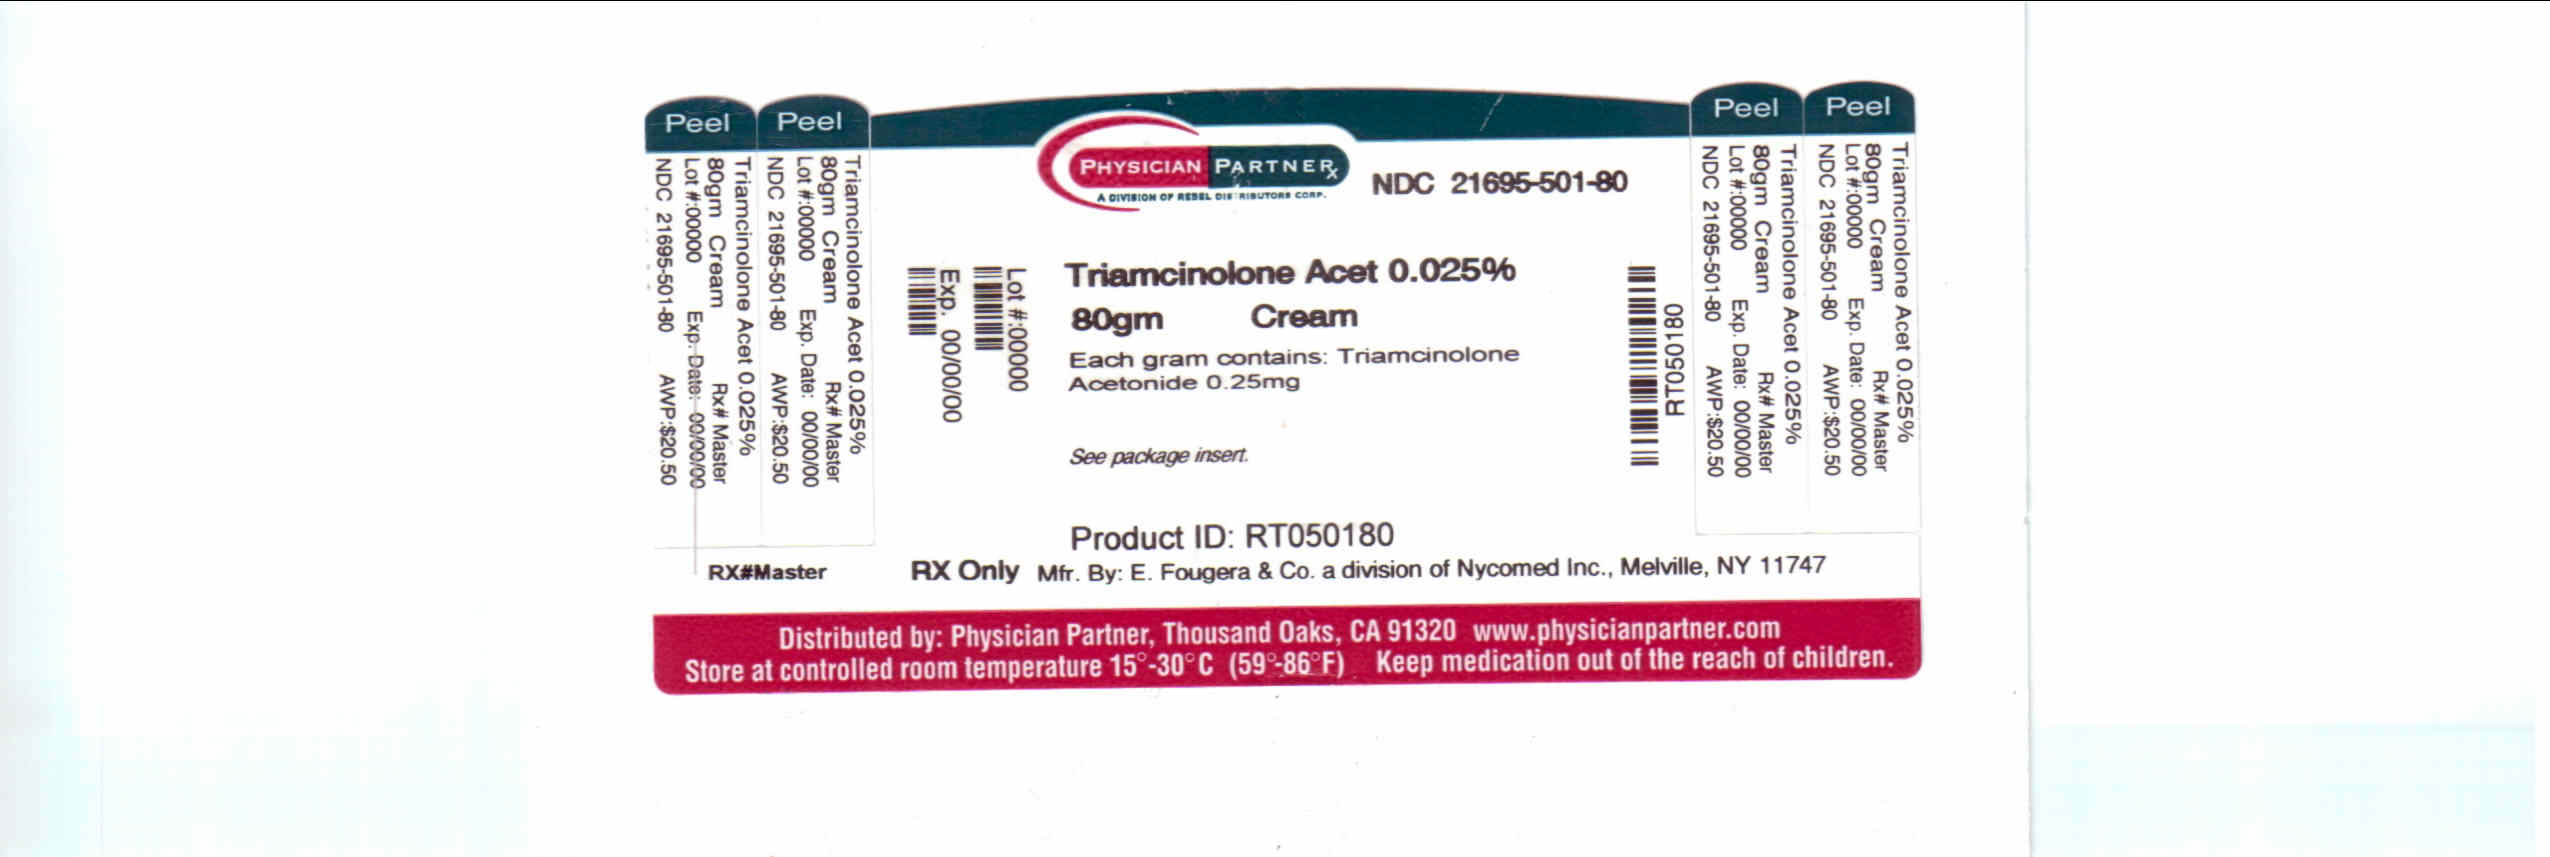 Triamcinolone Acet 0.025%